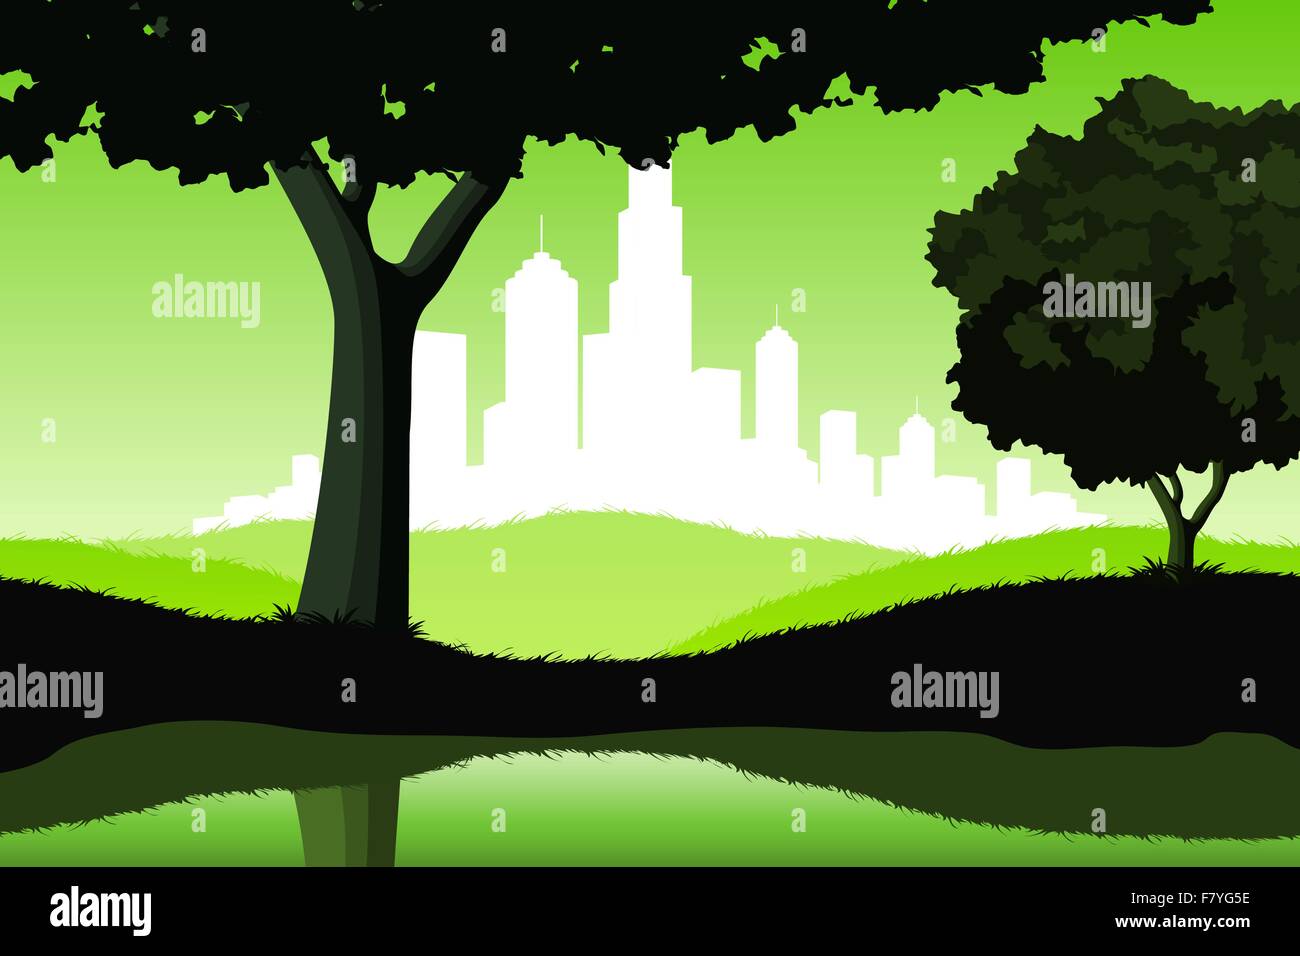 Nacht-Landschaft mit Bäumen und Stadtsilhouette Stock Vektor